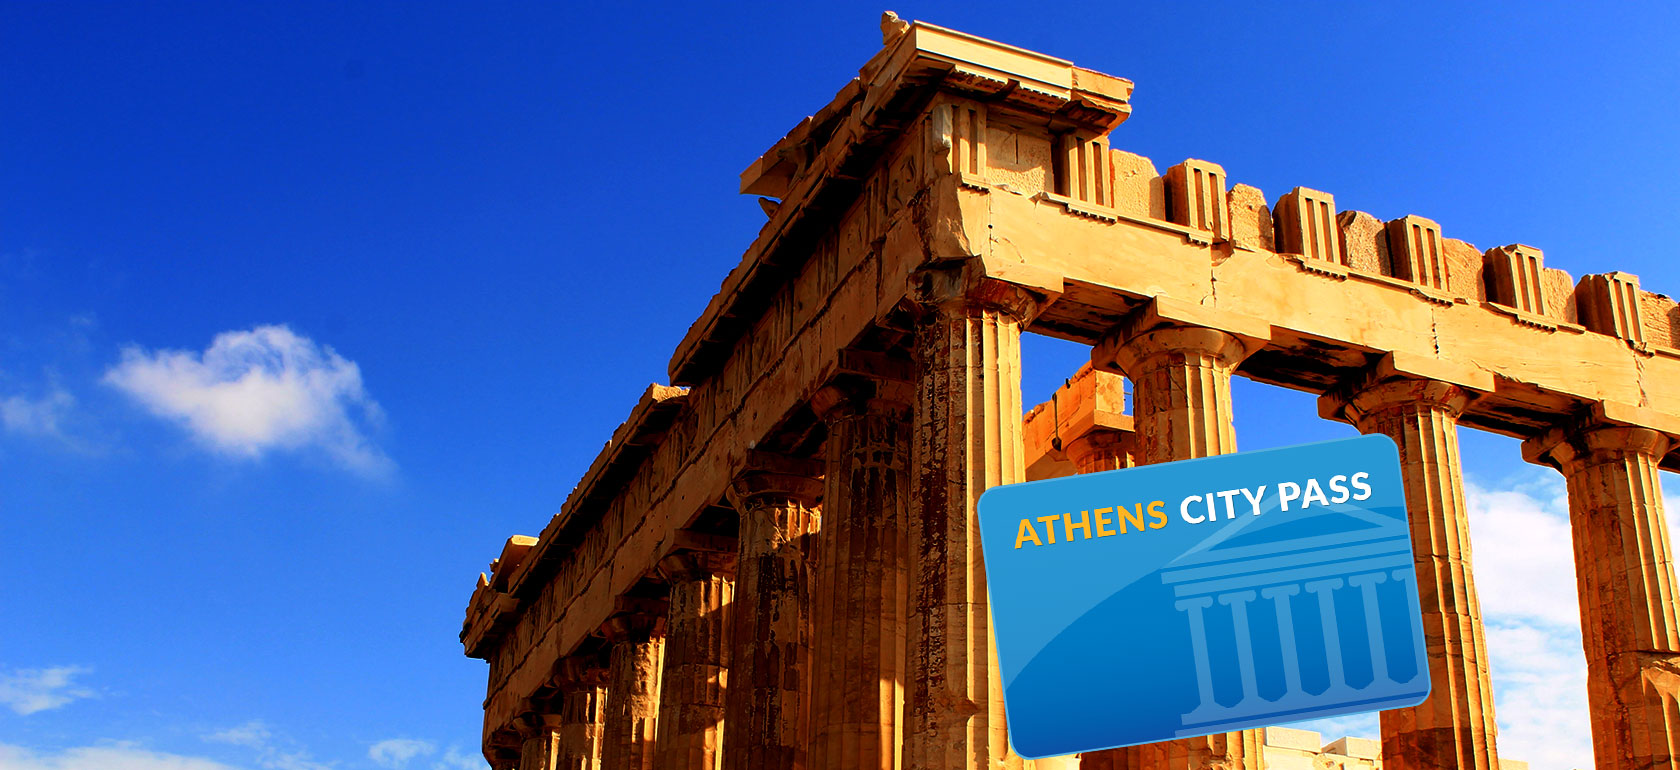 ATHENS-CITY-PASS-1510239352-1510747256